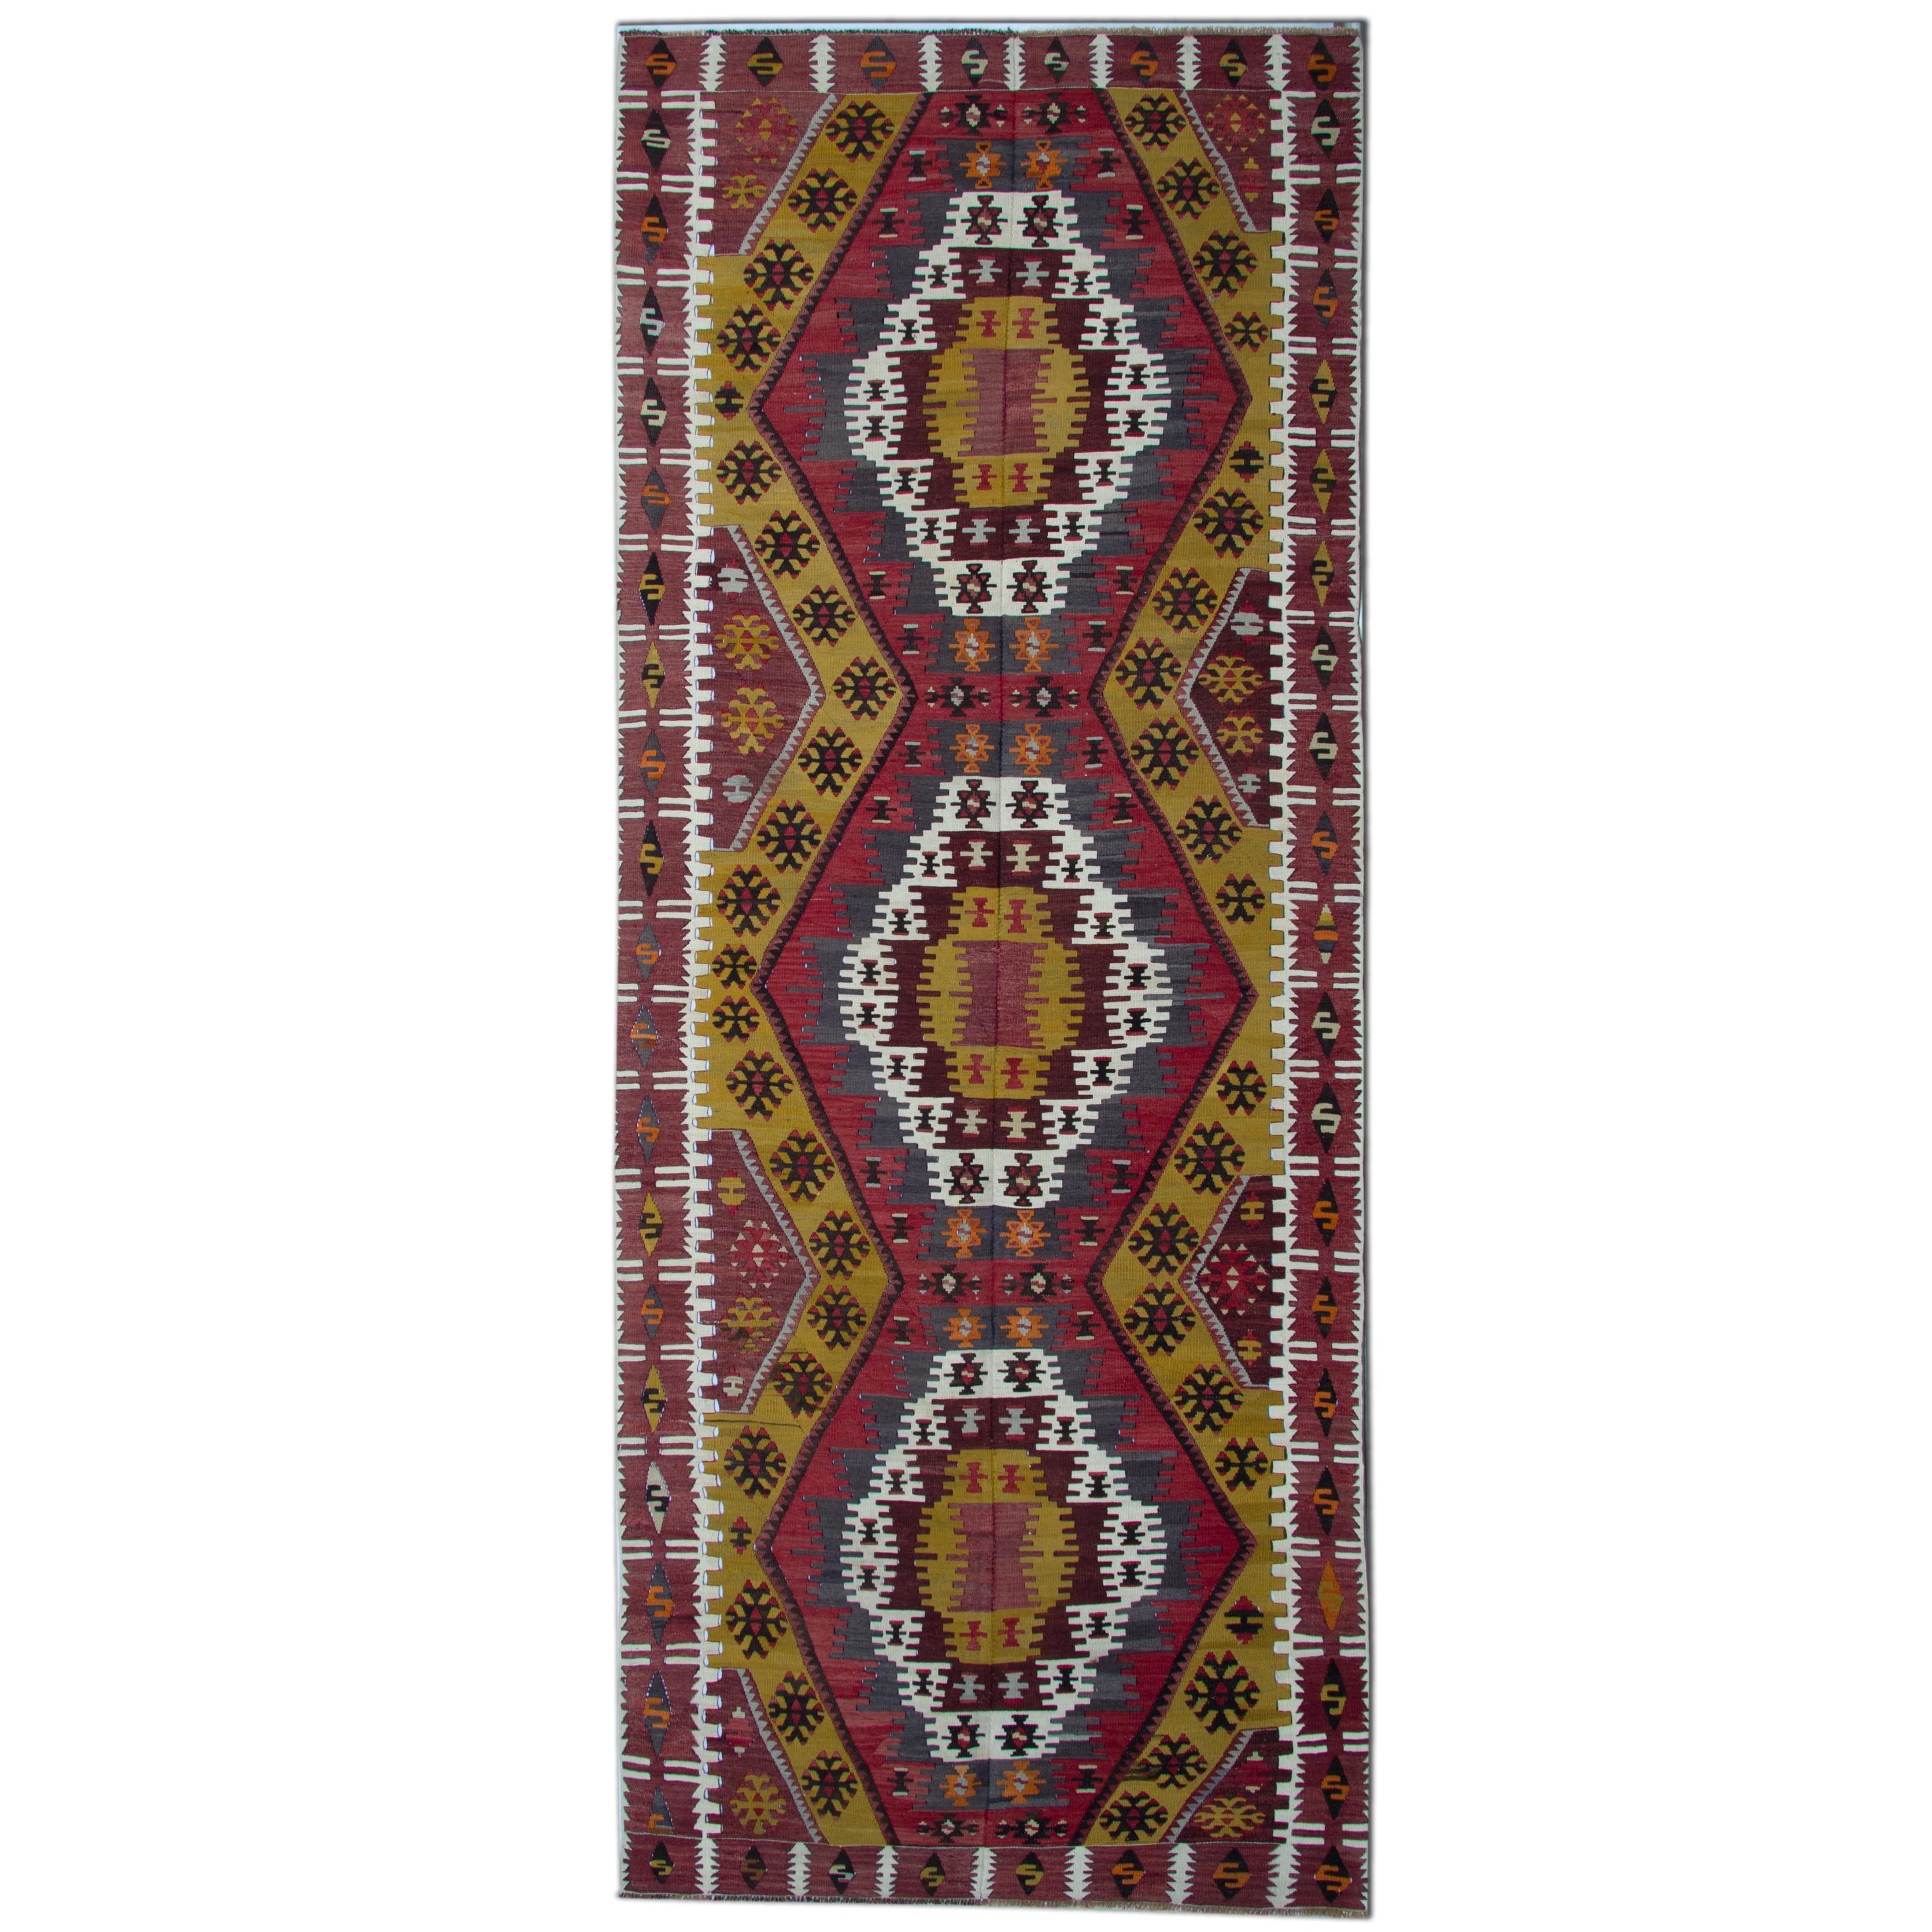 Handmade Carpet Turkish Kilim Rugs, Antique Runner Rug, Gold Rug Stair Runner